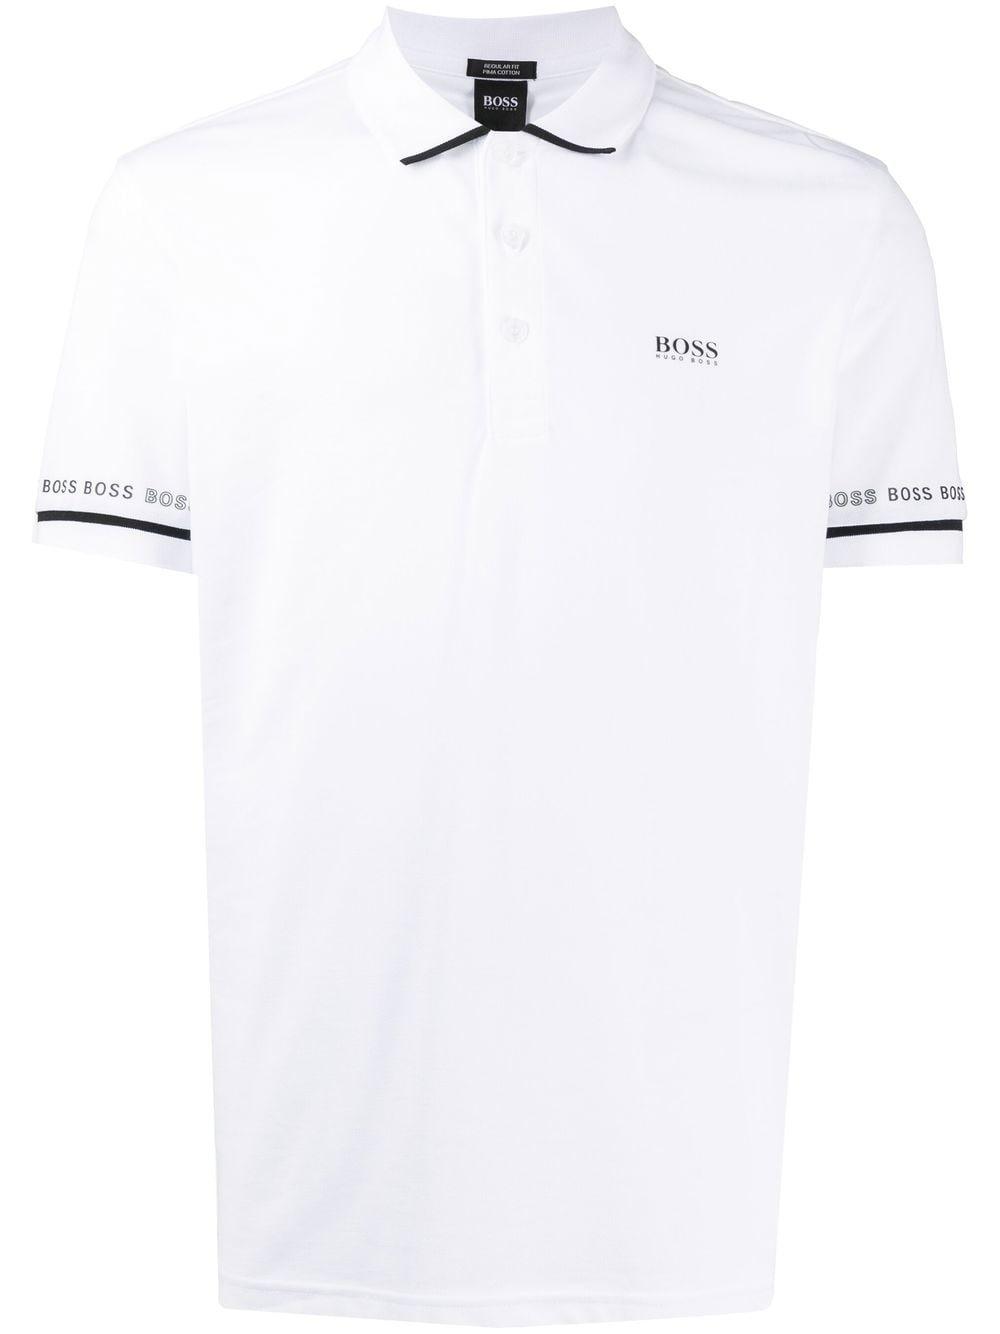 BOSS by HUGO BOSS Polo Shirt In Logo Details White for Men | Lyst